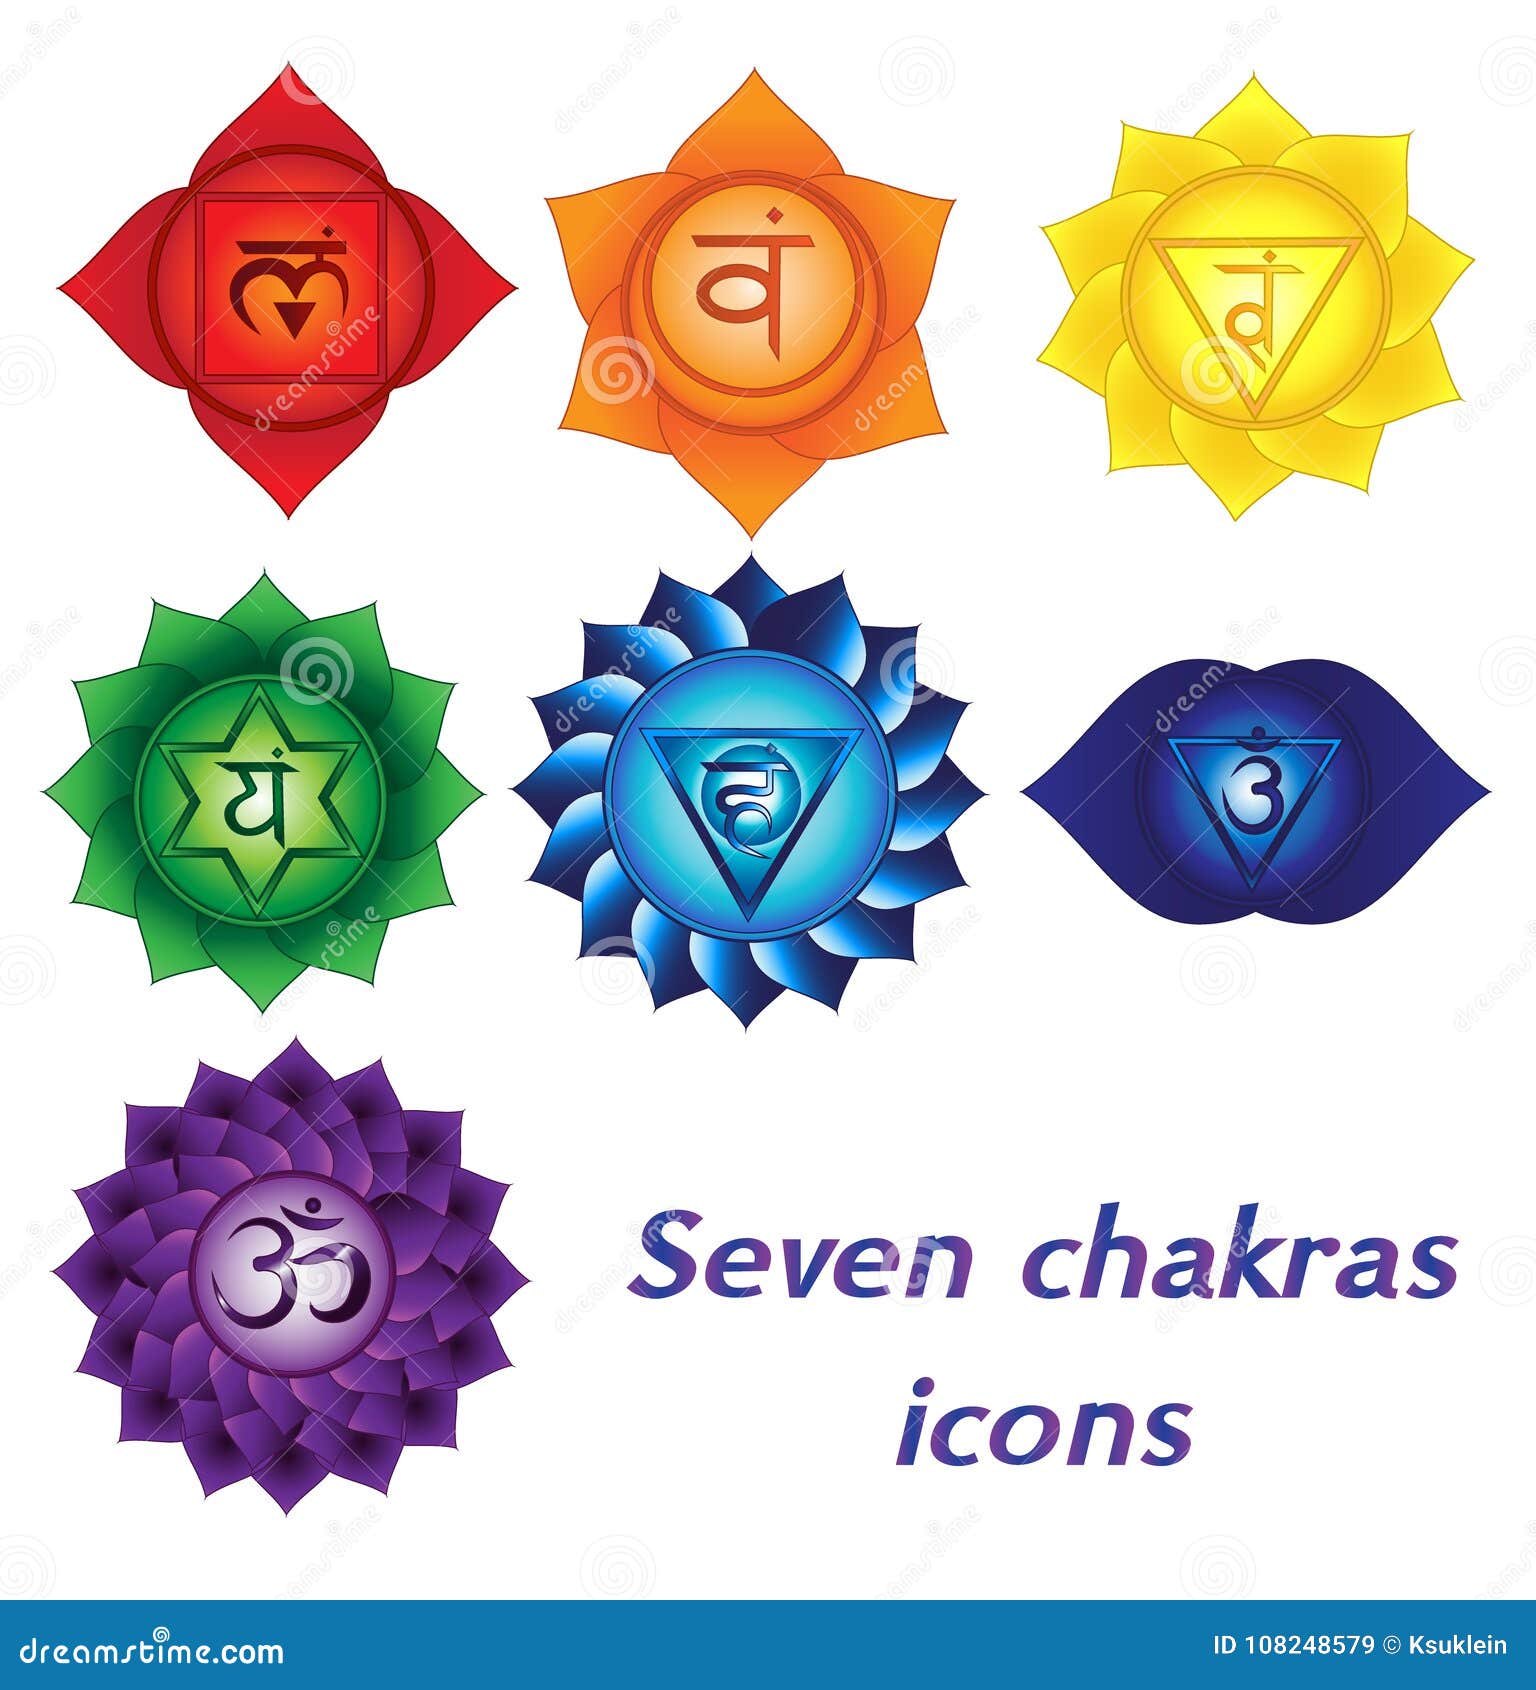 crown chakra symbol tattoo